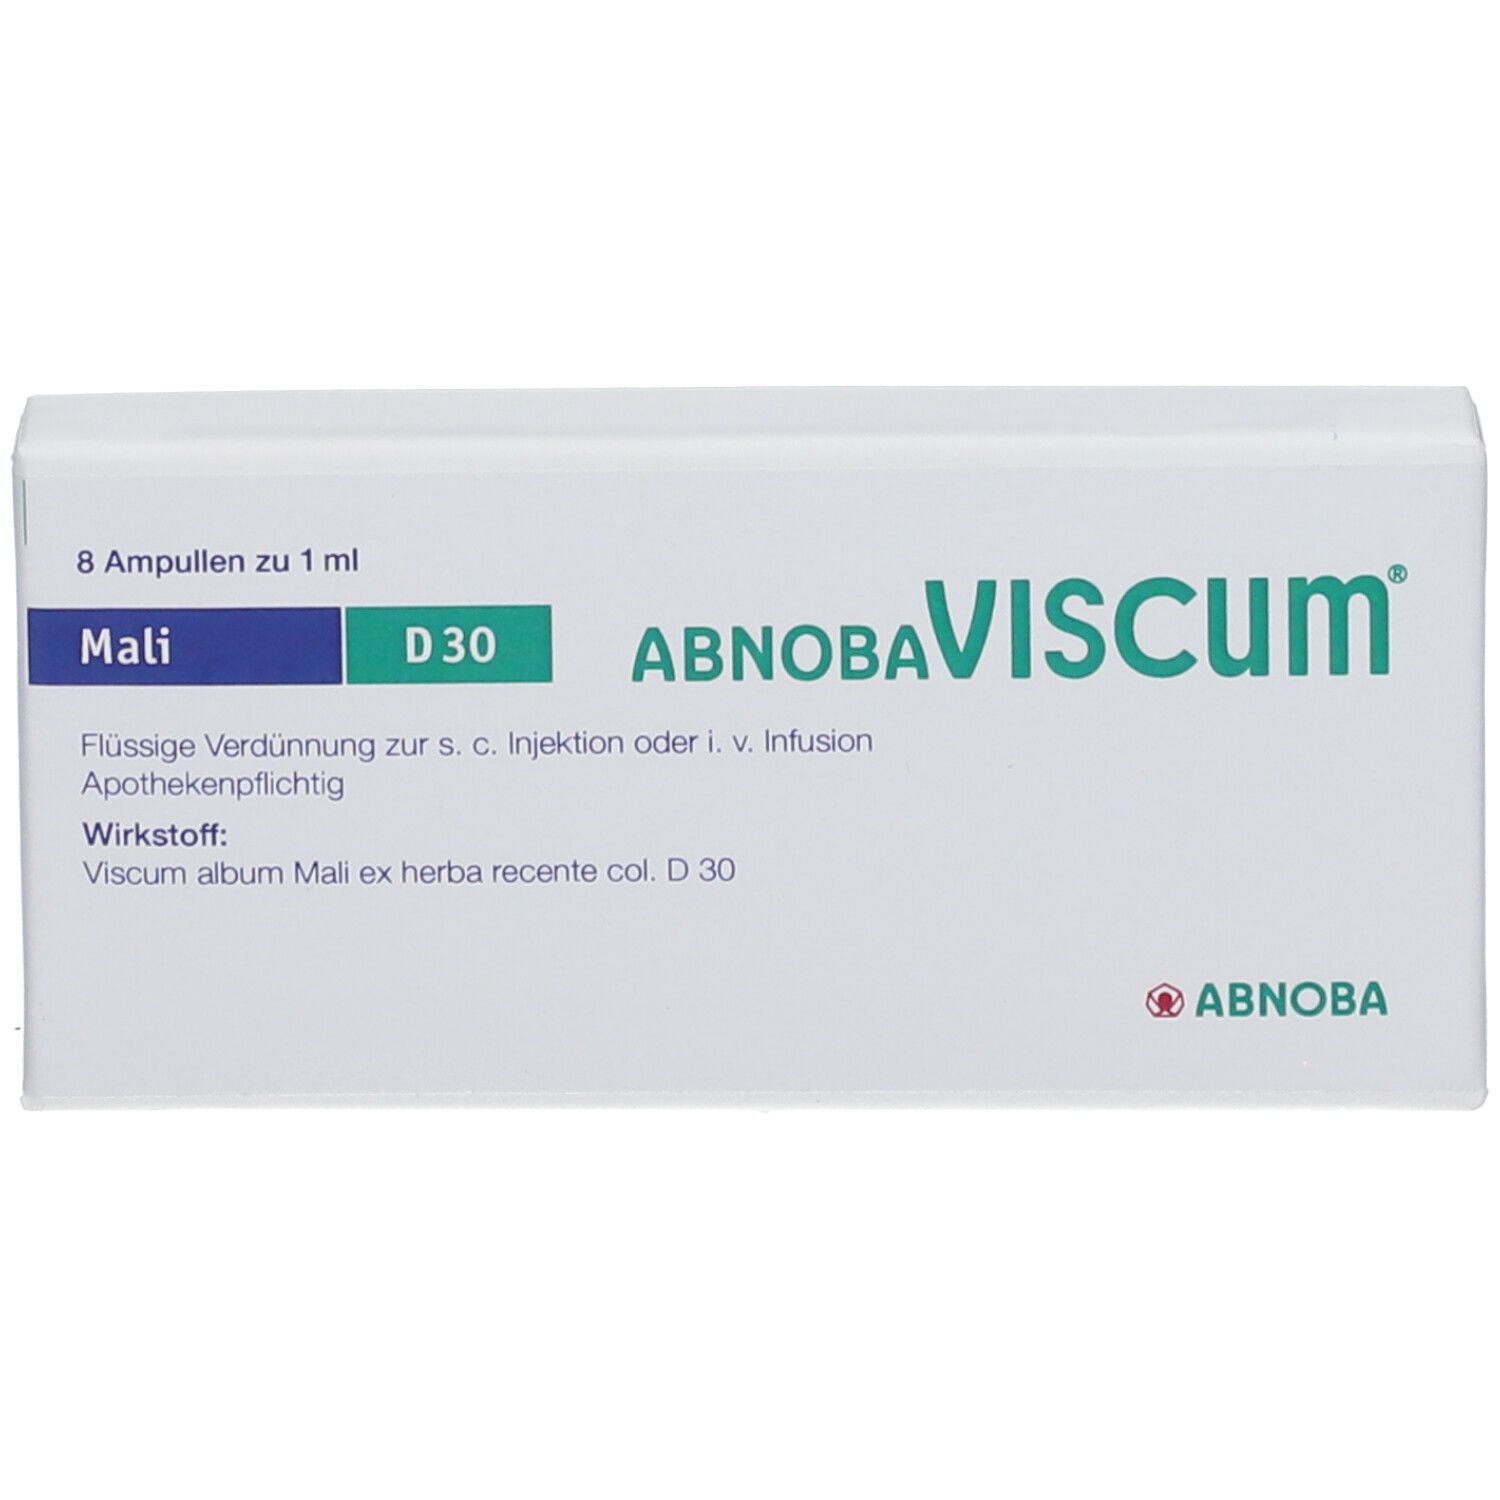 AbnobaVISCUM® Mali D30 Ampullen